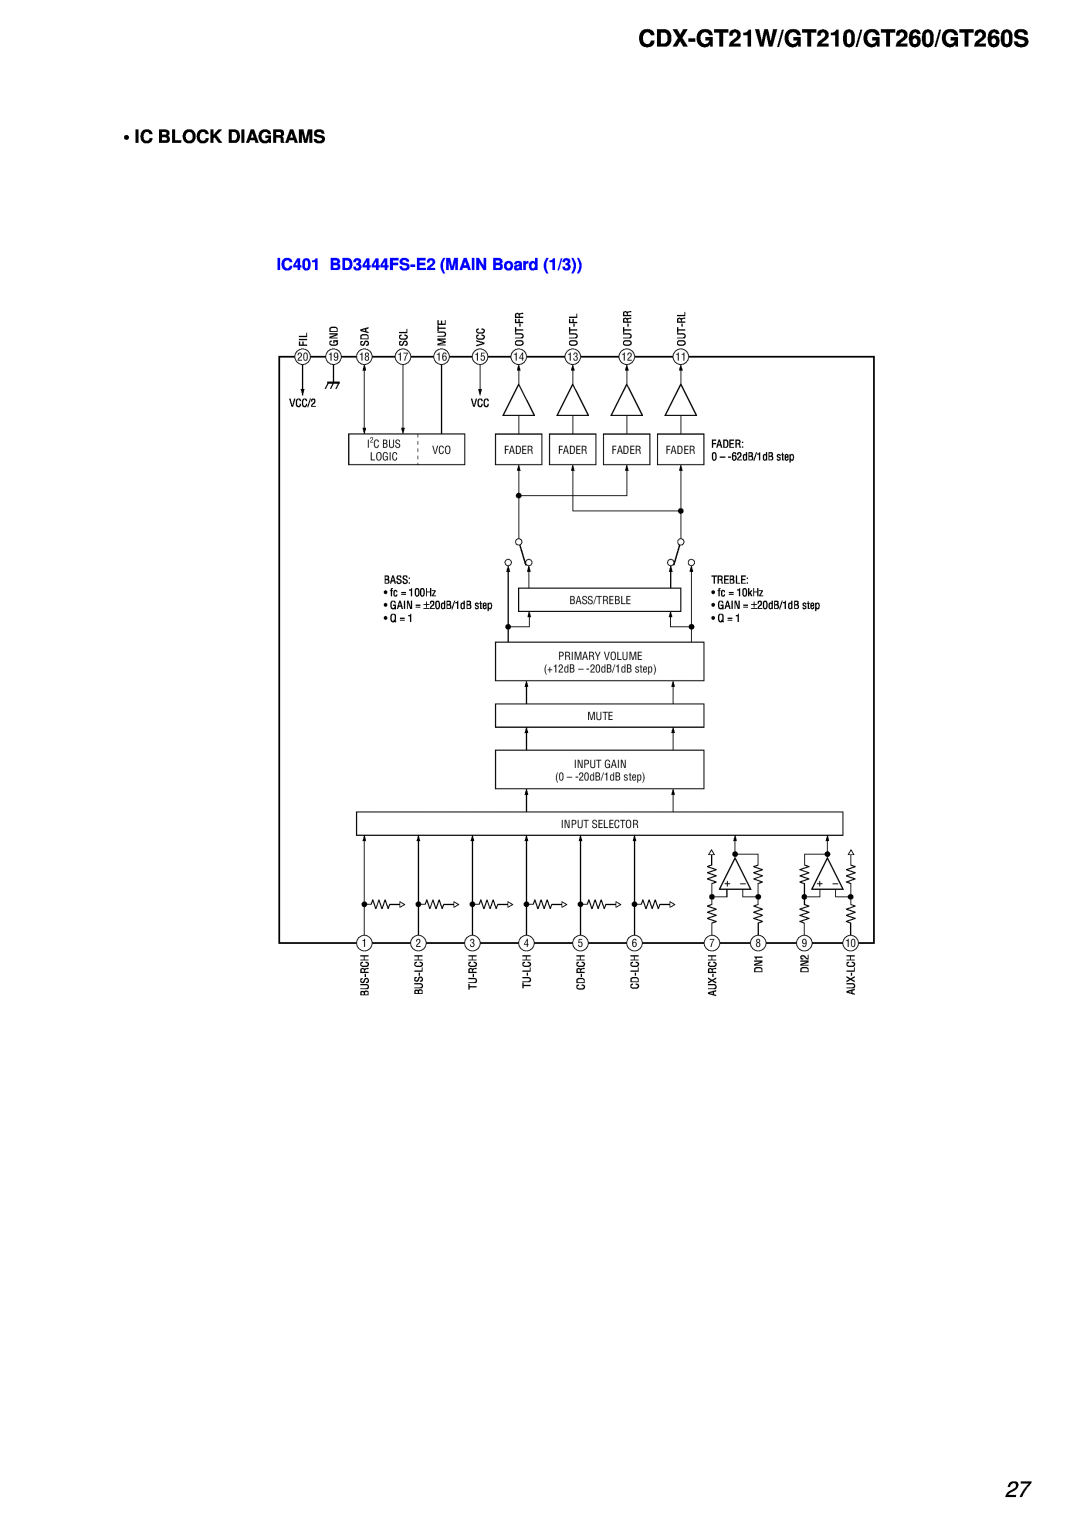 Sony CDX-GT260S, CDX-GT210 service manual CDX-GT21W/GT210/GT260/GT260S, Ic Block Diagrams, IC401 BD3444FS-E2MAIN Board 1/3 